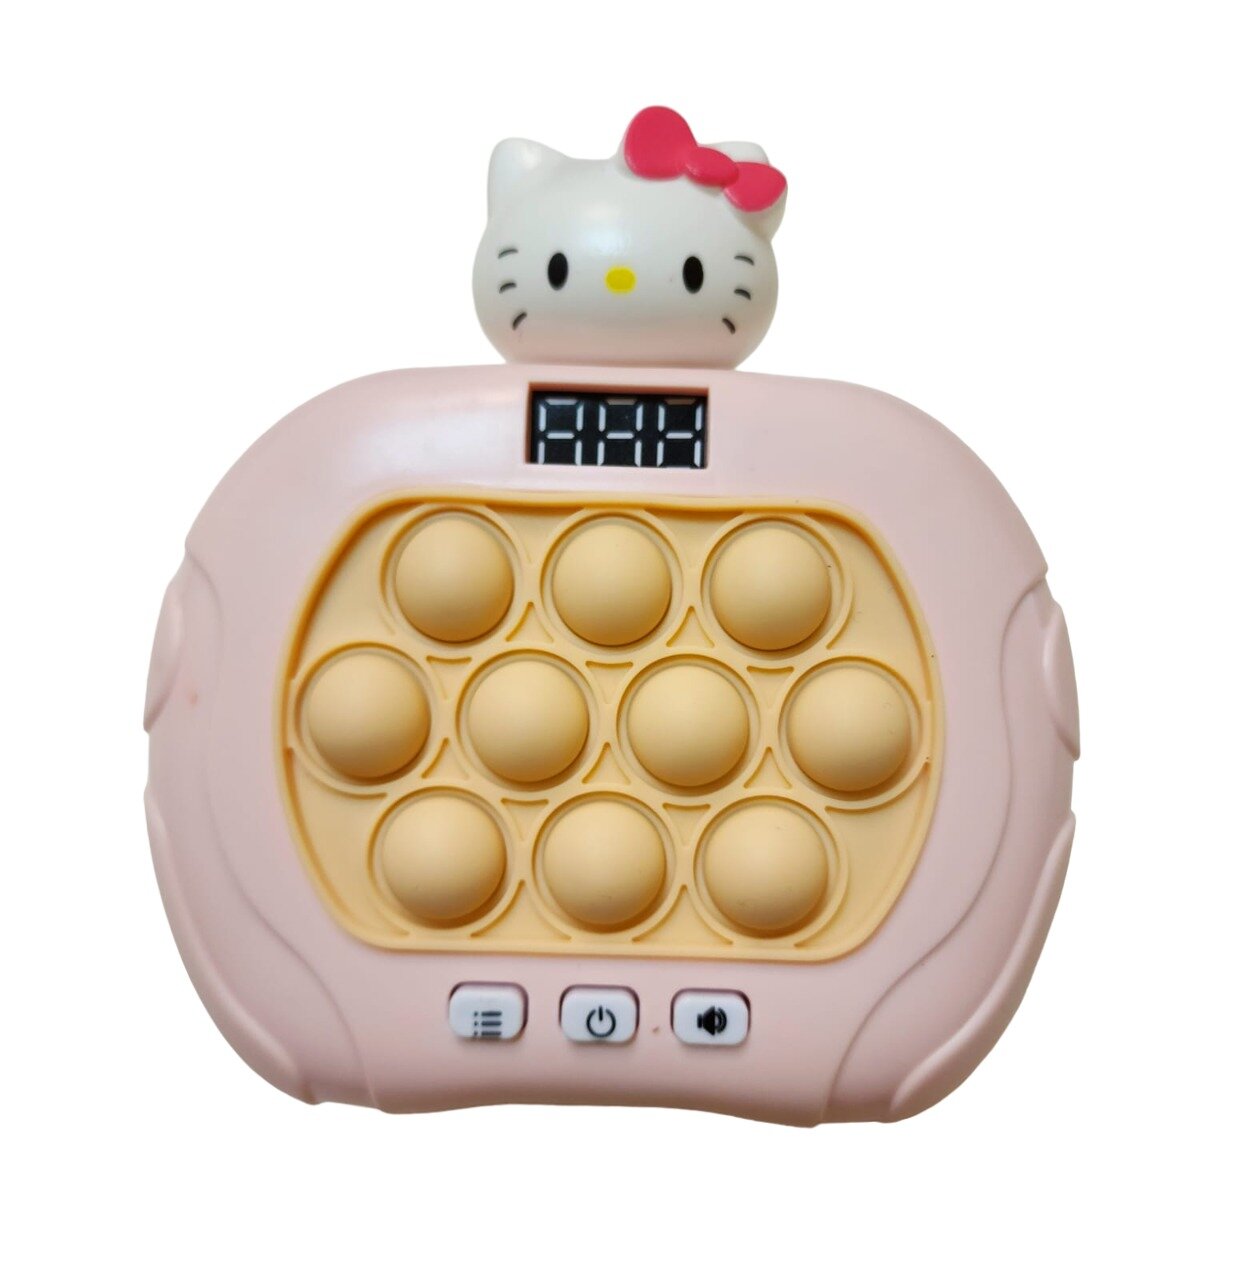 Электронный поп ит Хелло Китти / игрушка антистресс pop-it сипмпл димпл (интерактивная игрушка для детей)